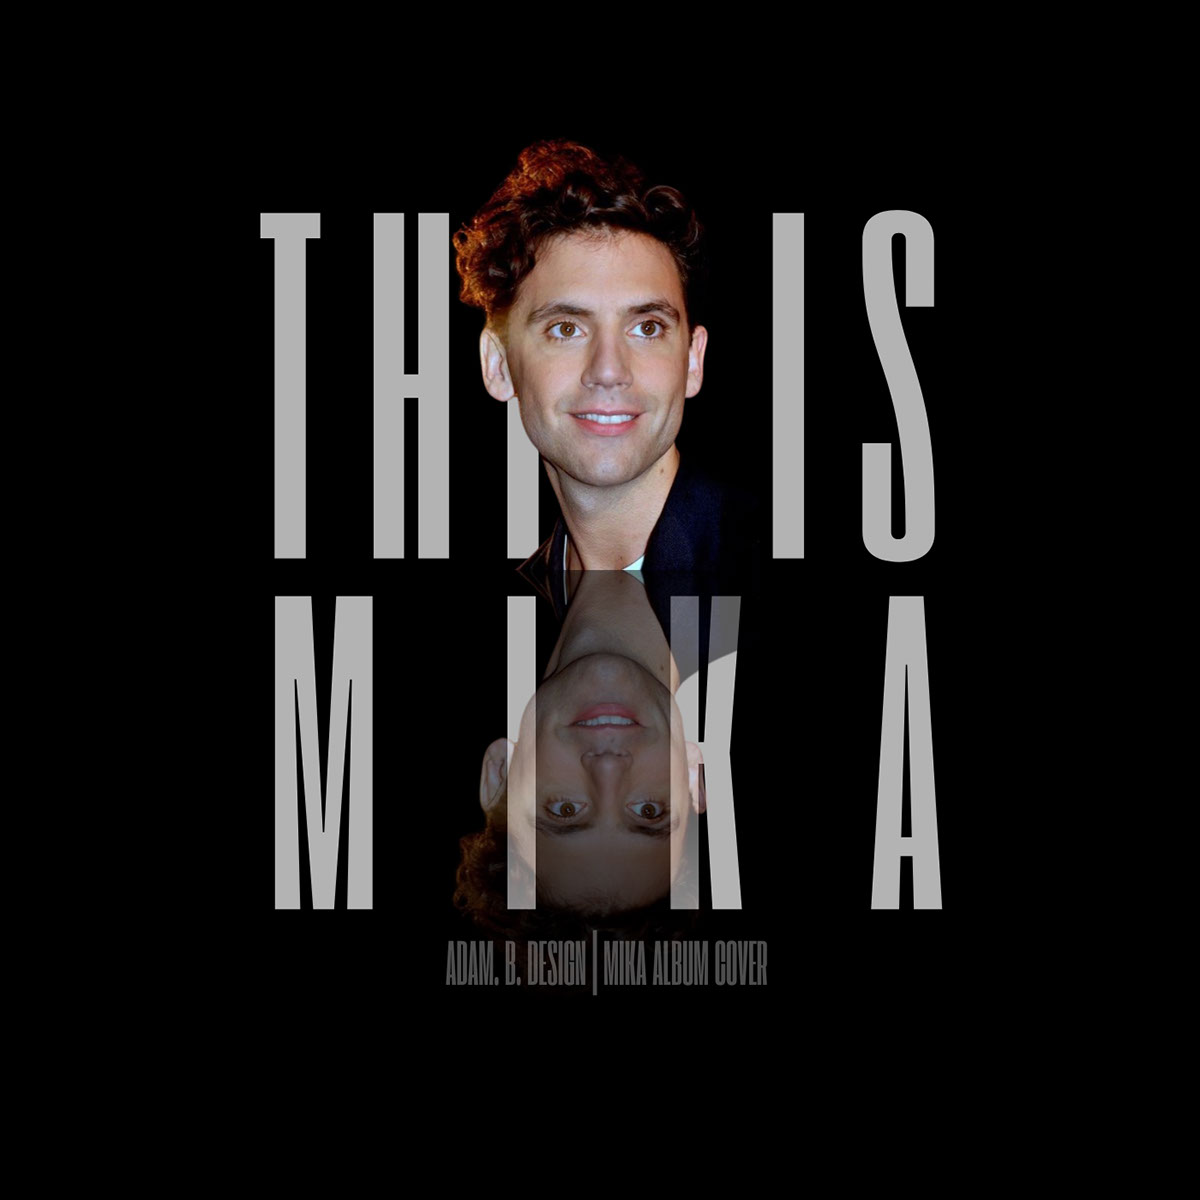 This is Mika Album Designs Catalog rendition image